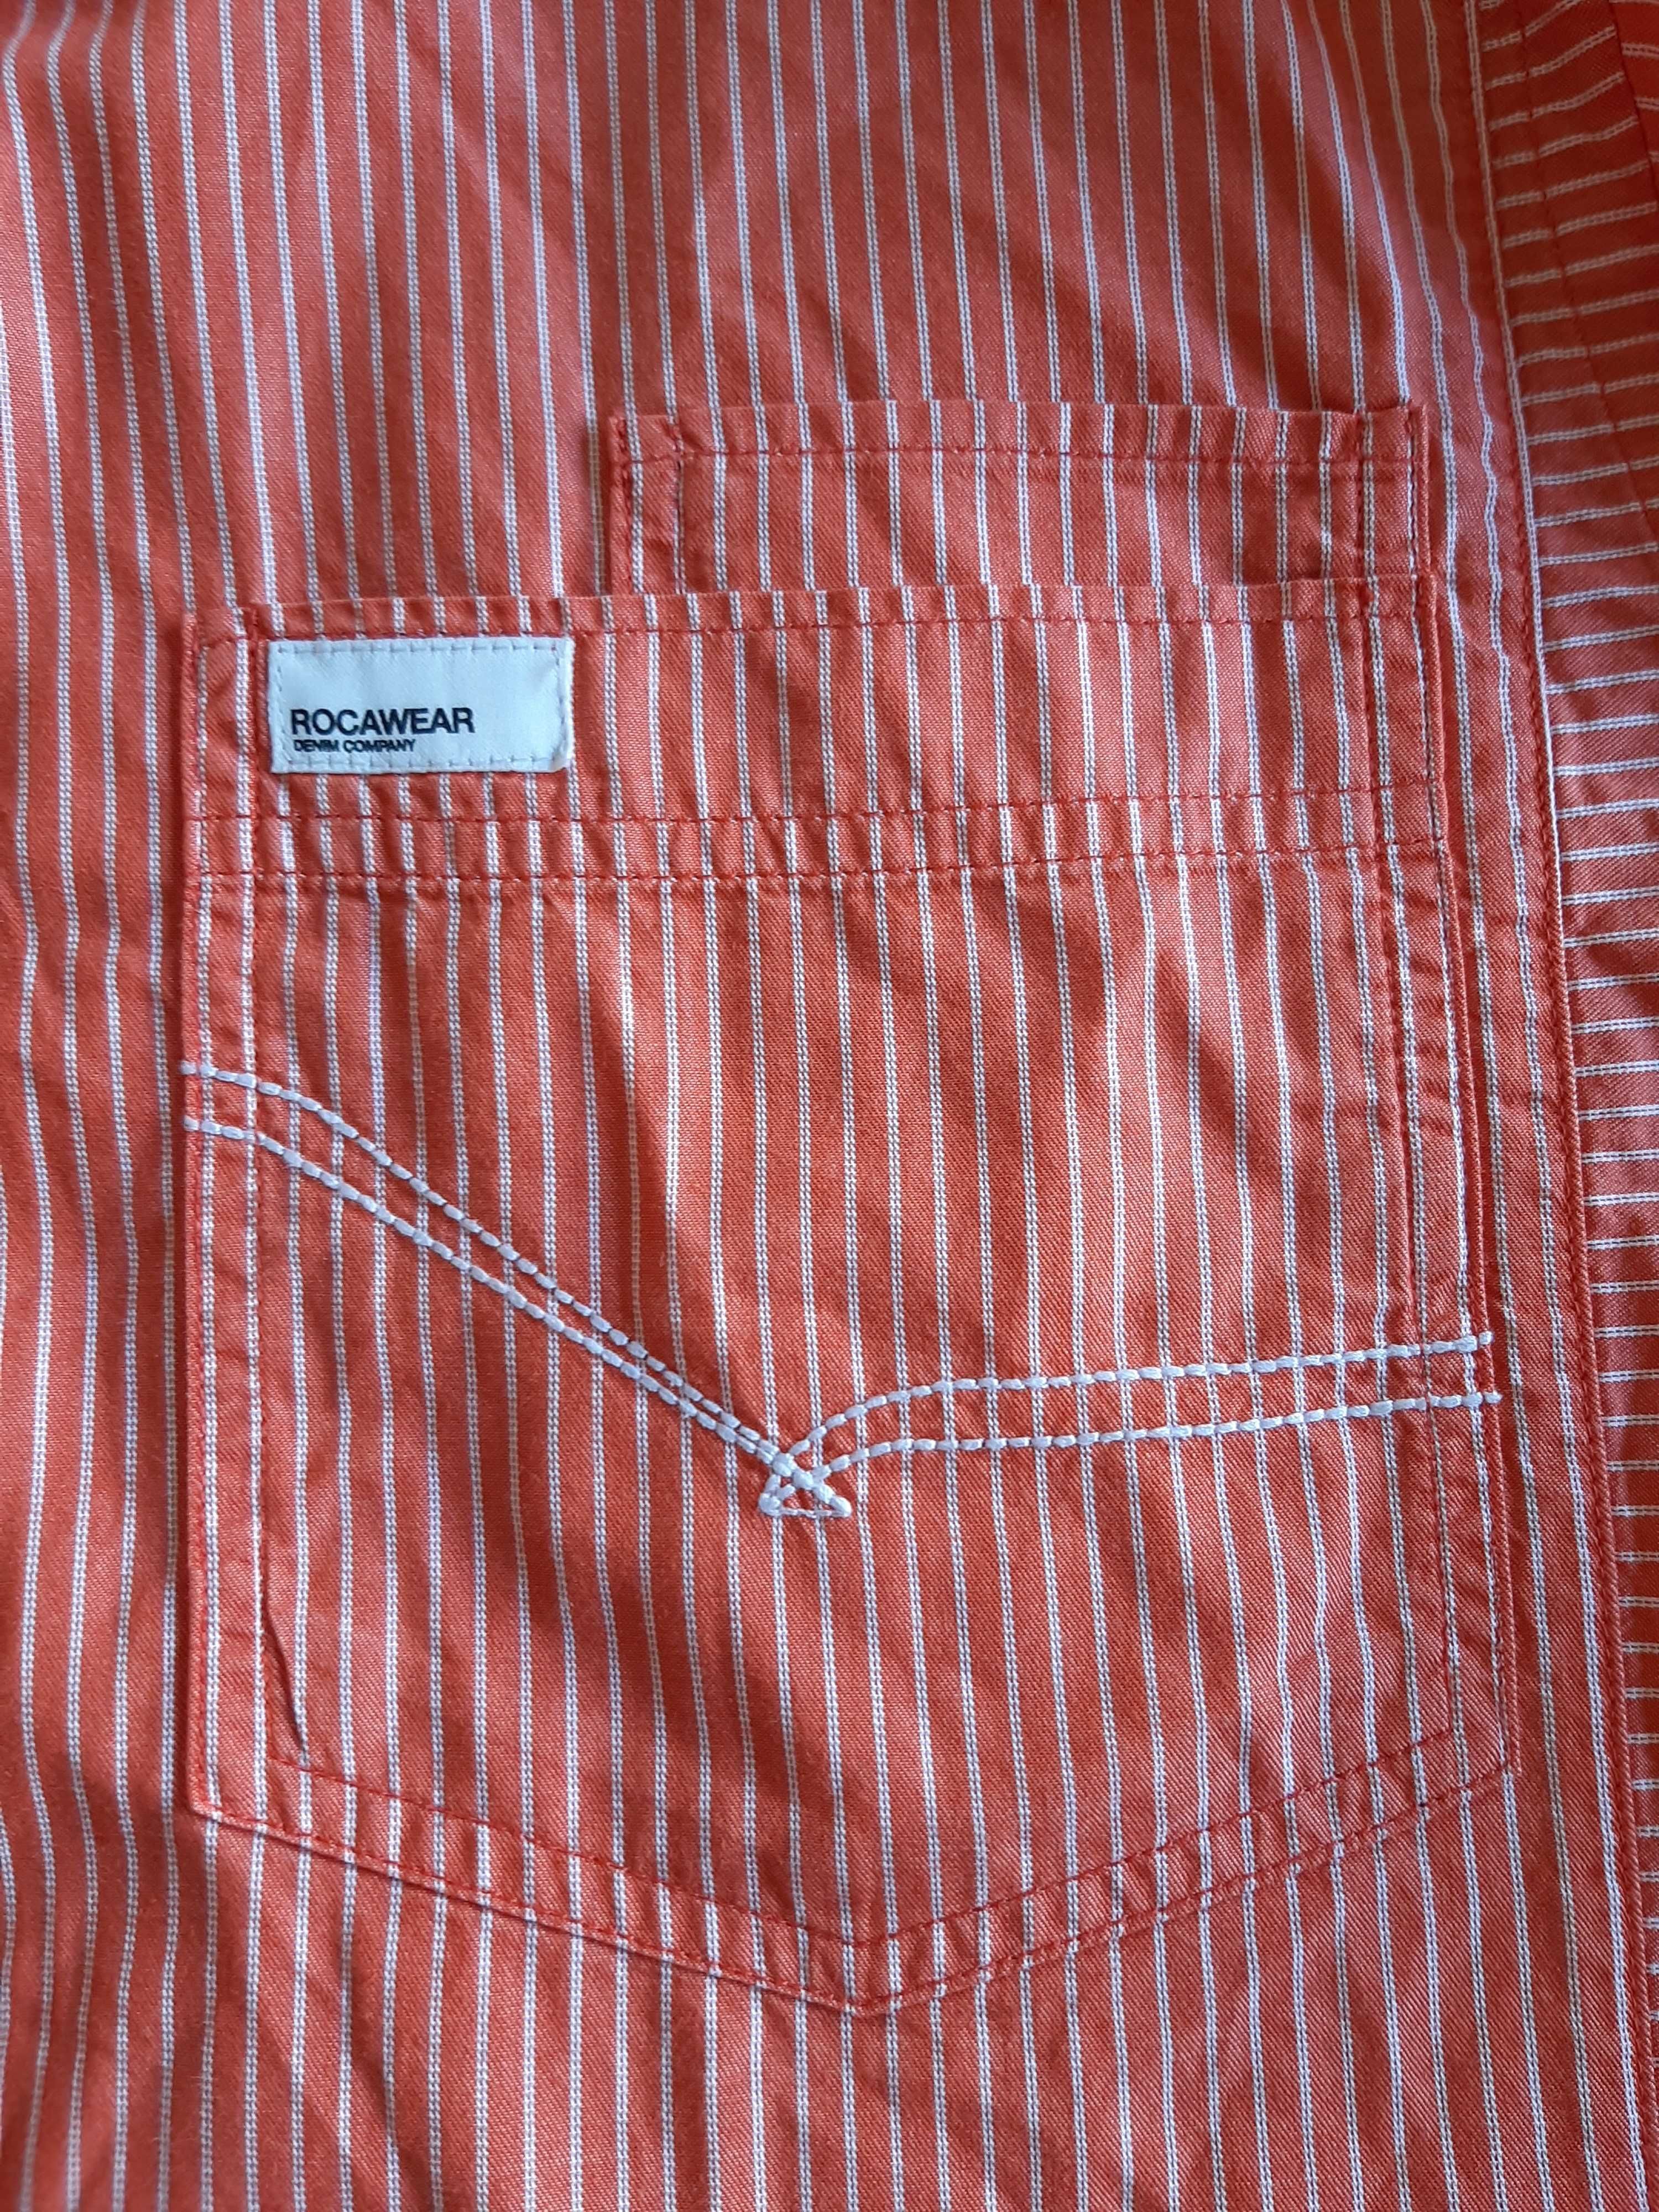 Camisa Rocawear XL M. Curta Homem